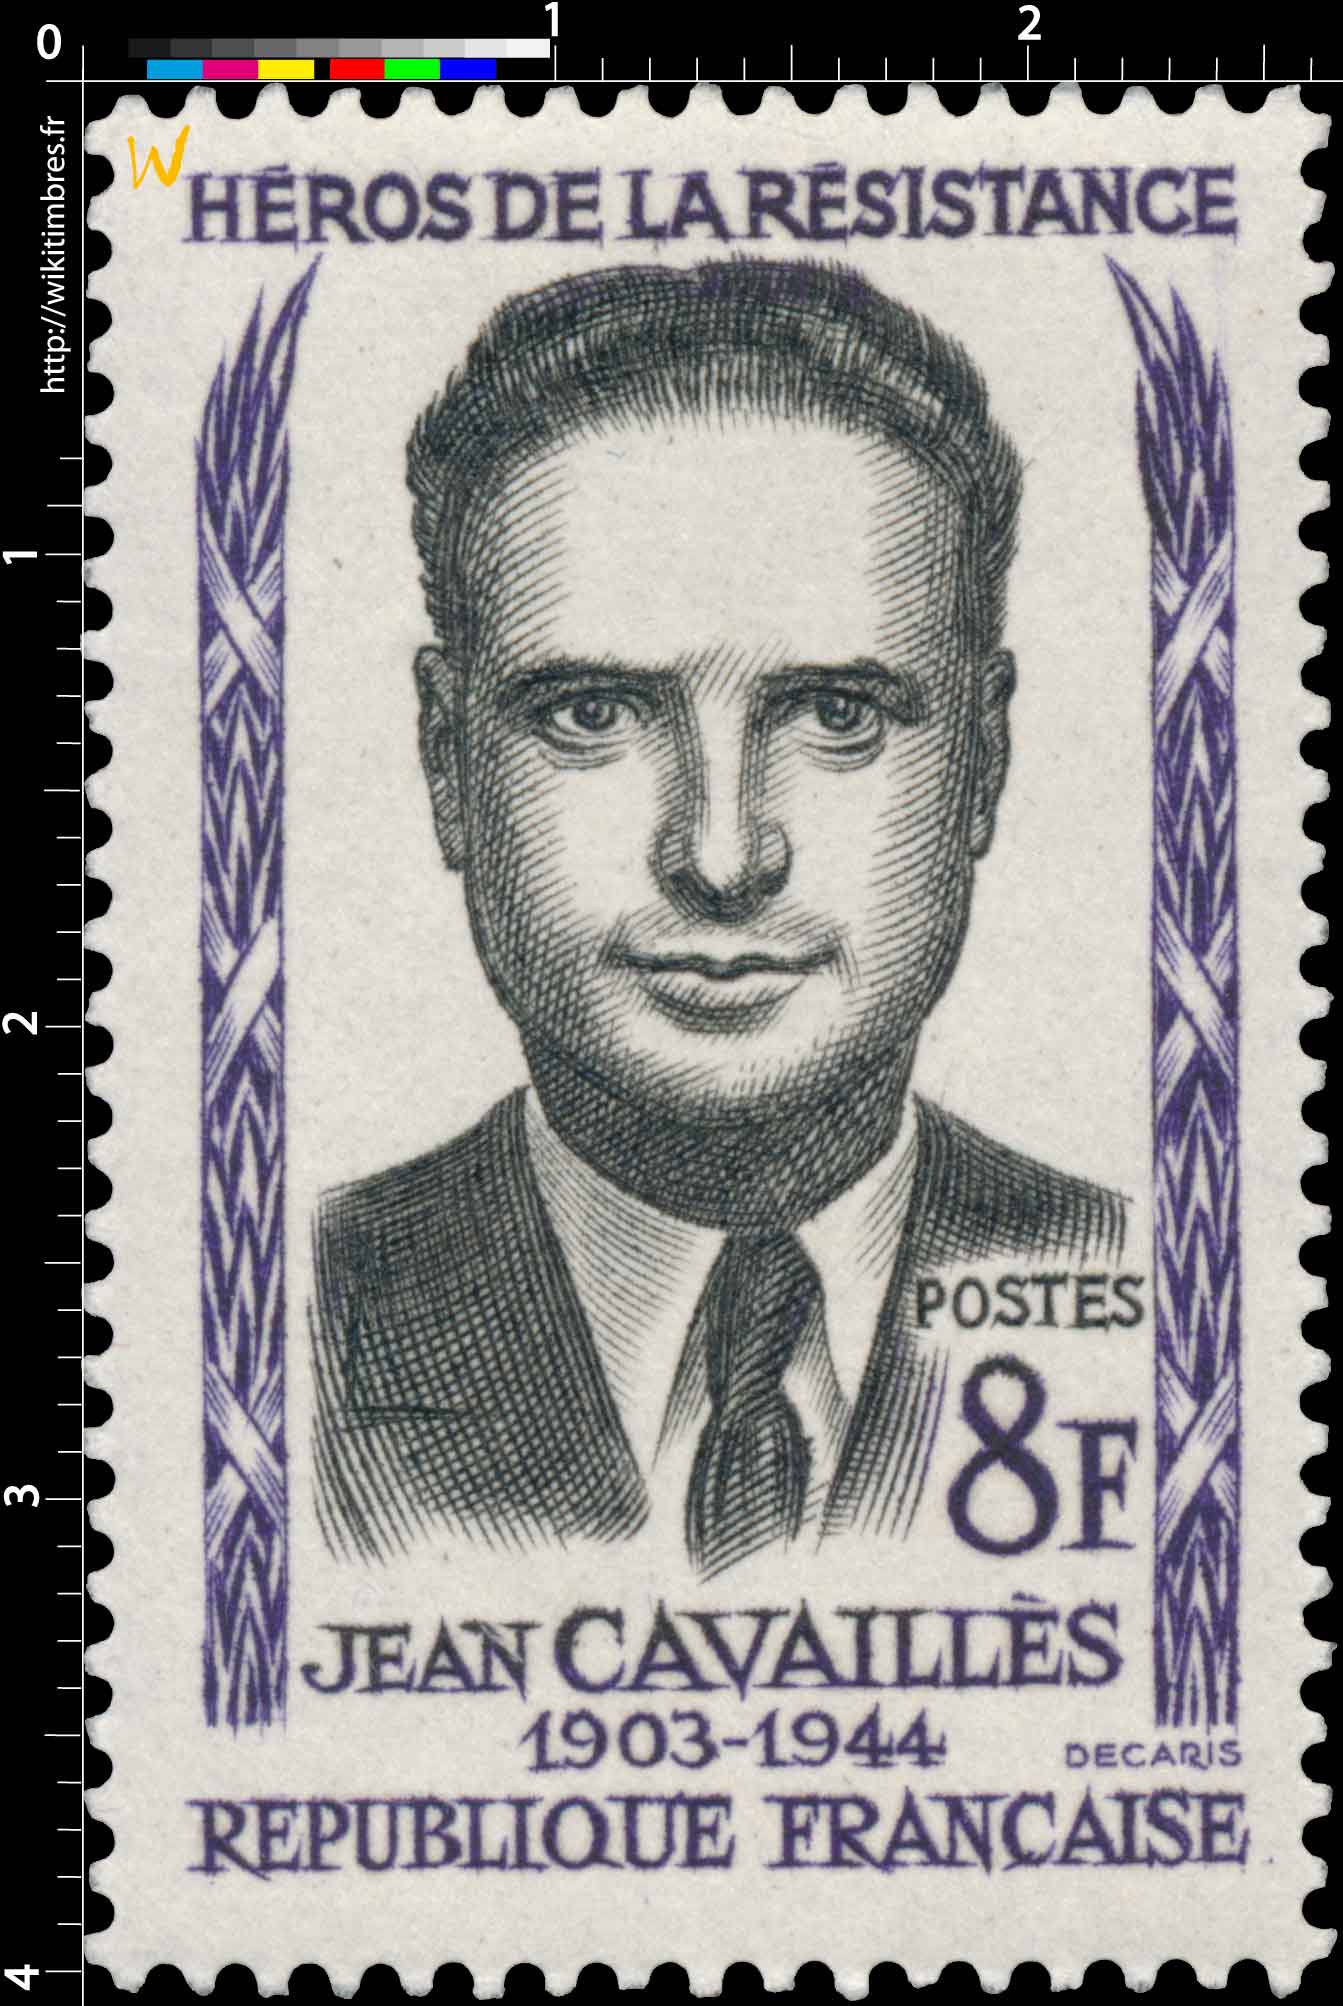 HÉROS DE LA RÉSISTANCE JEAN CAVAILLÈS 1903-1944